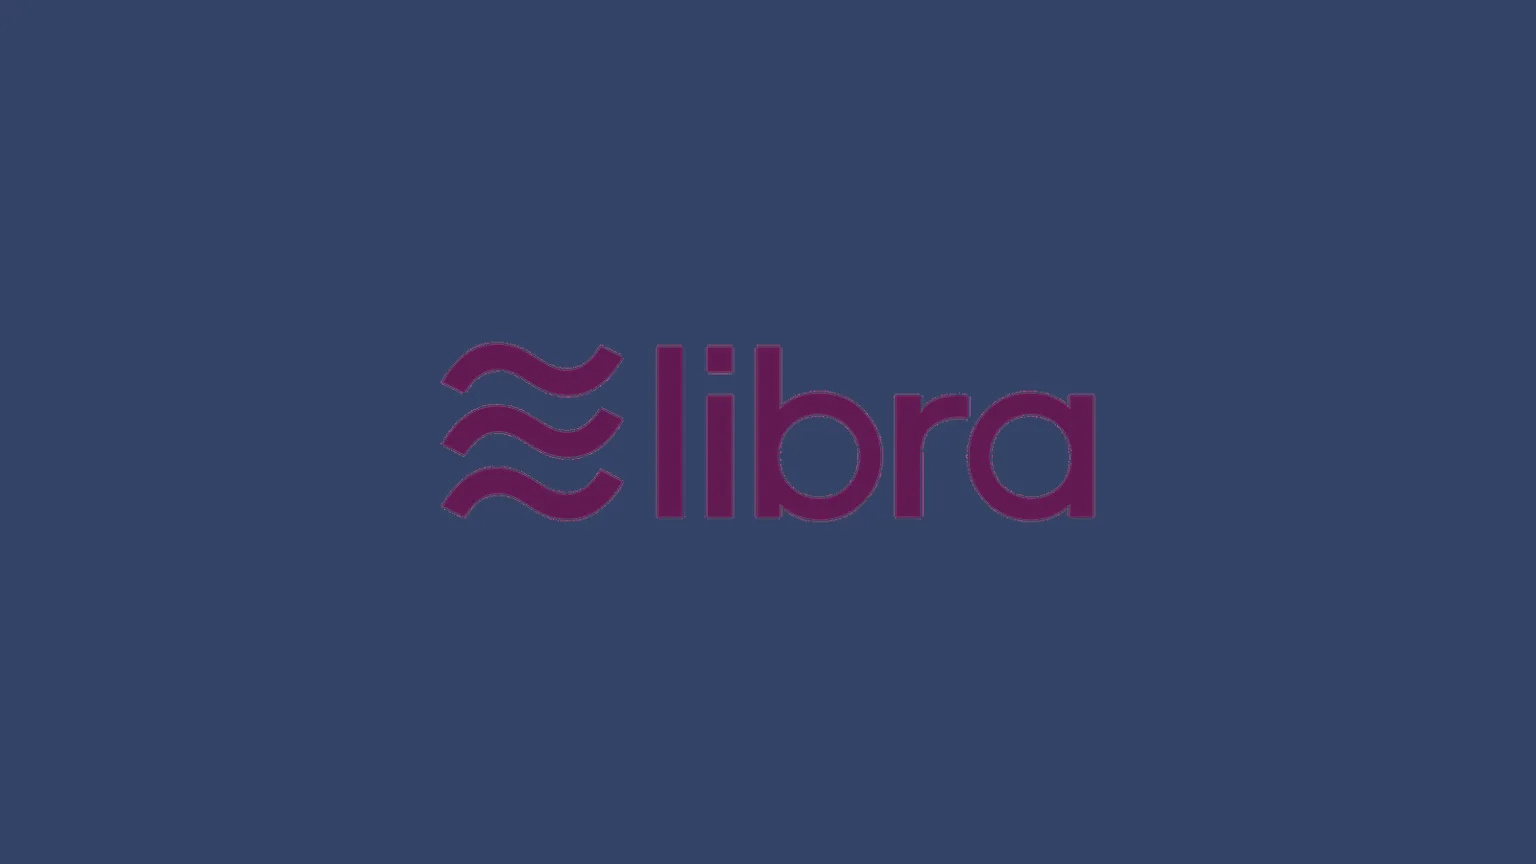 libra-facebook-libra-coin-cryptocurrency